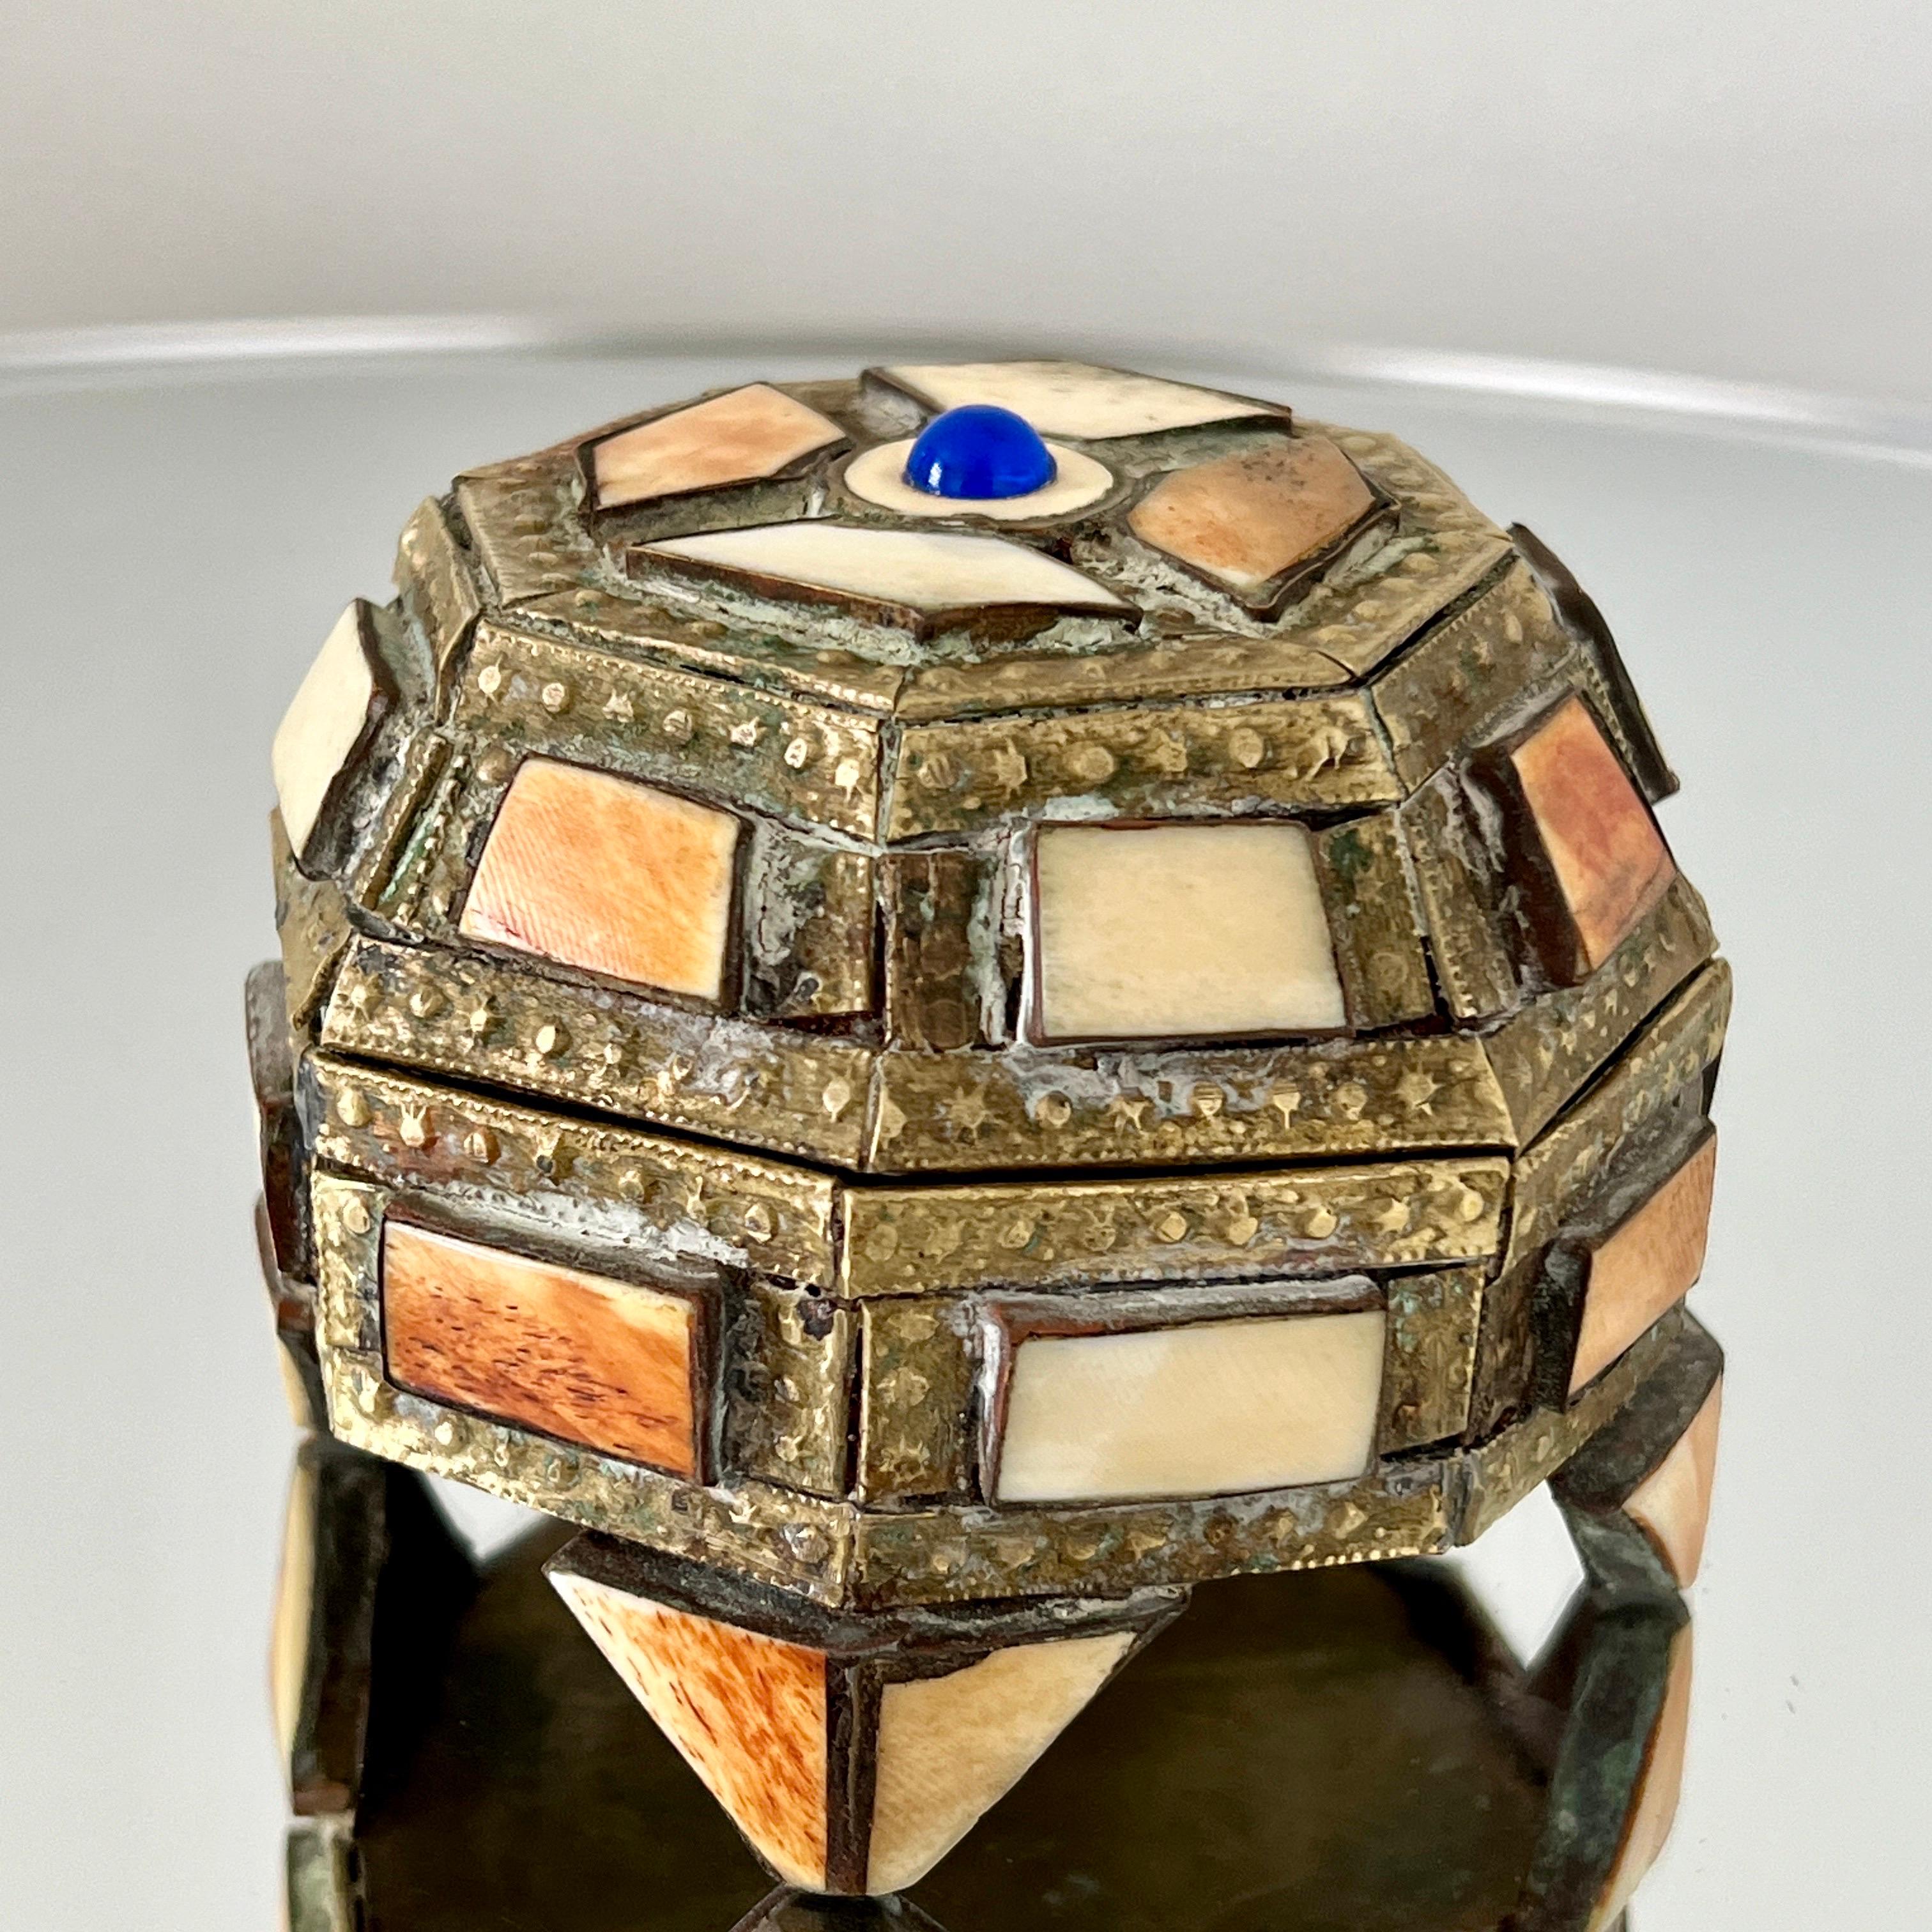 Boîte à bibelots en mosaïque faite à la main en métal laitonné perlé sur bois avec incrustations d'os.  La boîte présente un design géométrique octogonal avec une base à pieds et un couvercle.  Il présente des motifs métalliques incisés et une